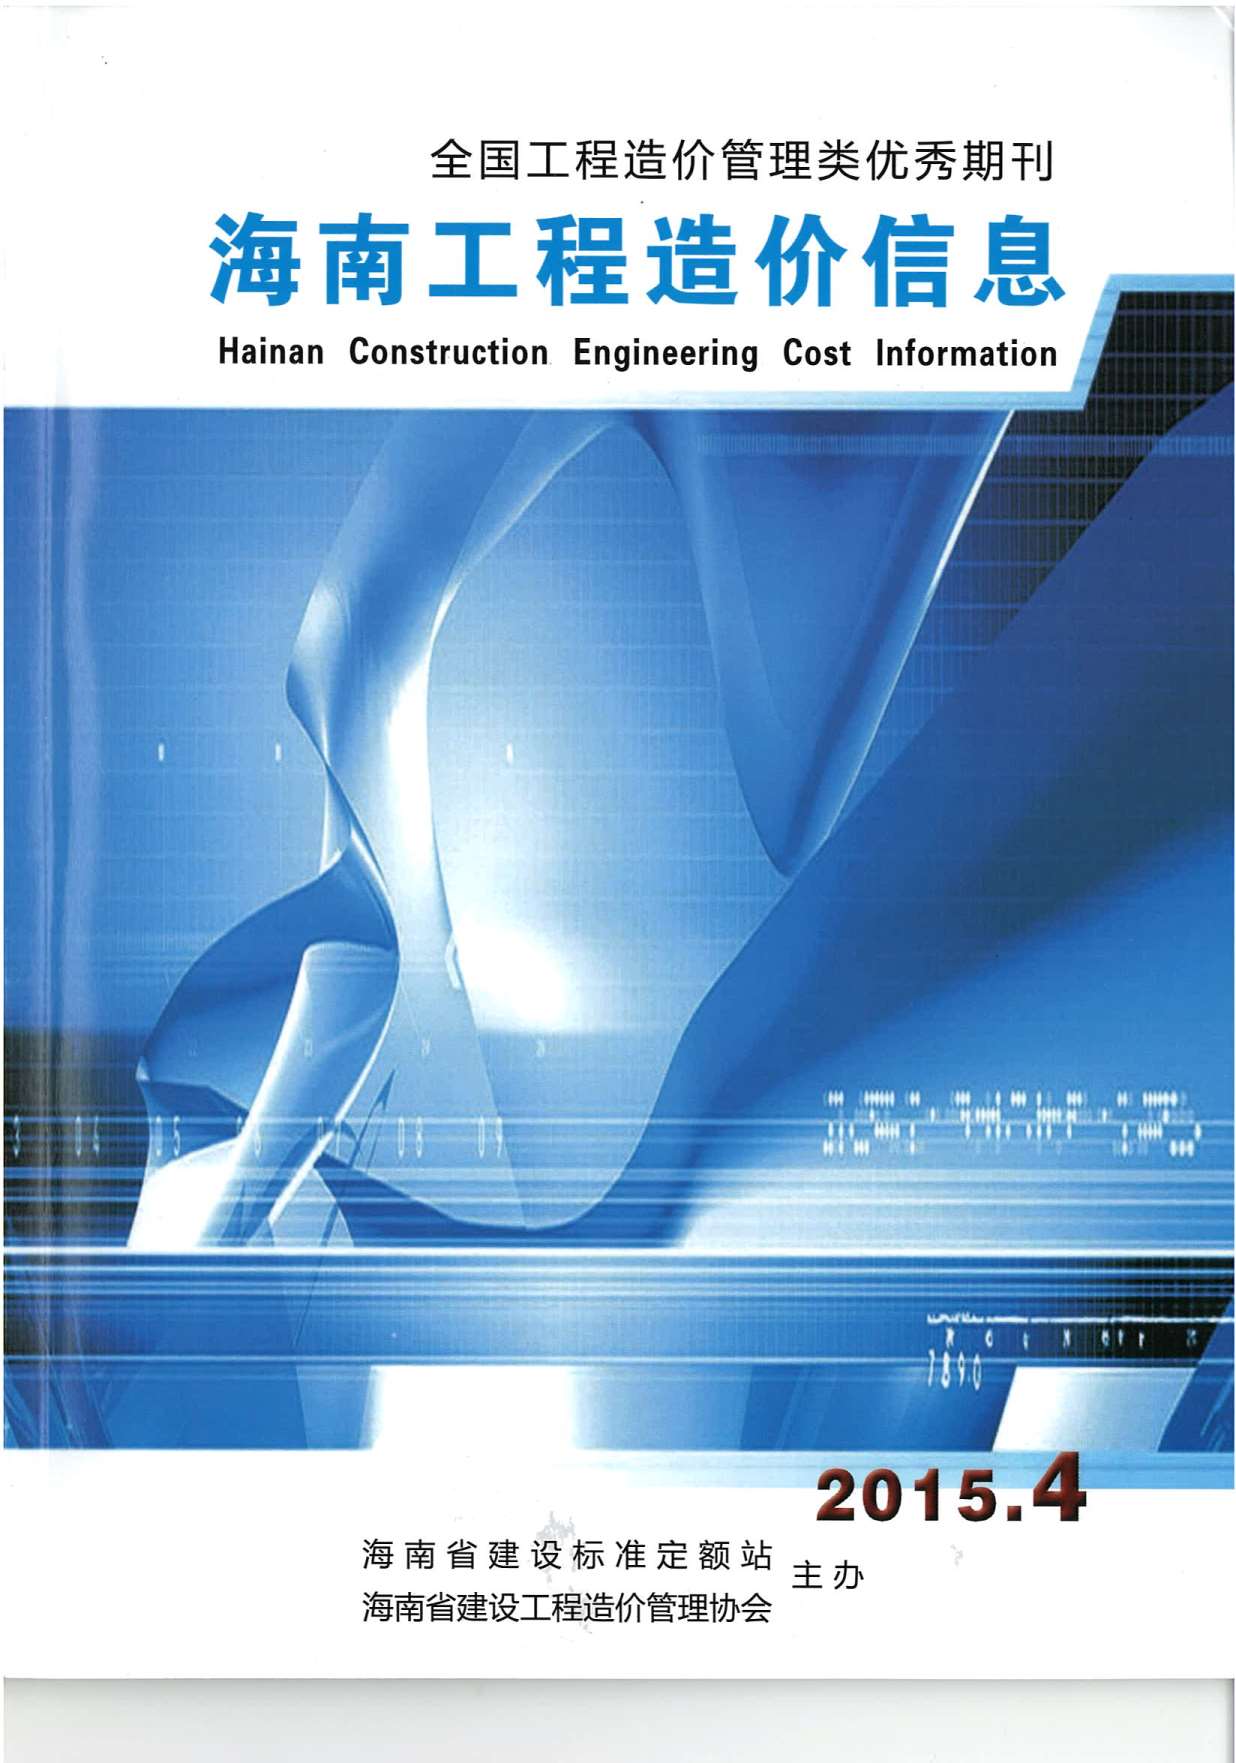 海南省2015年4月工程造价信息价